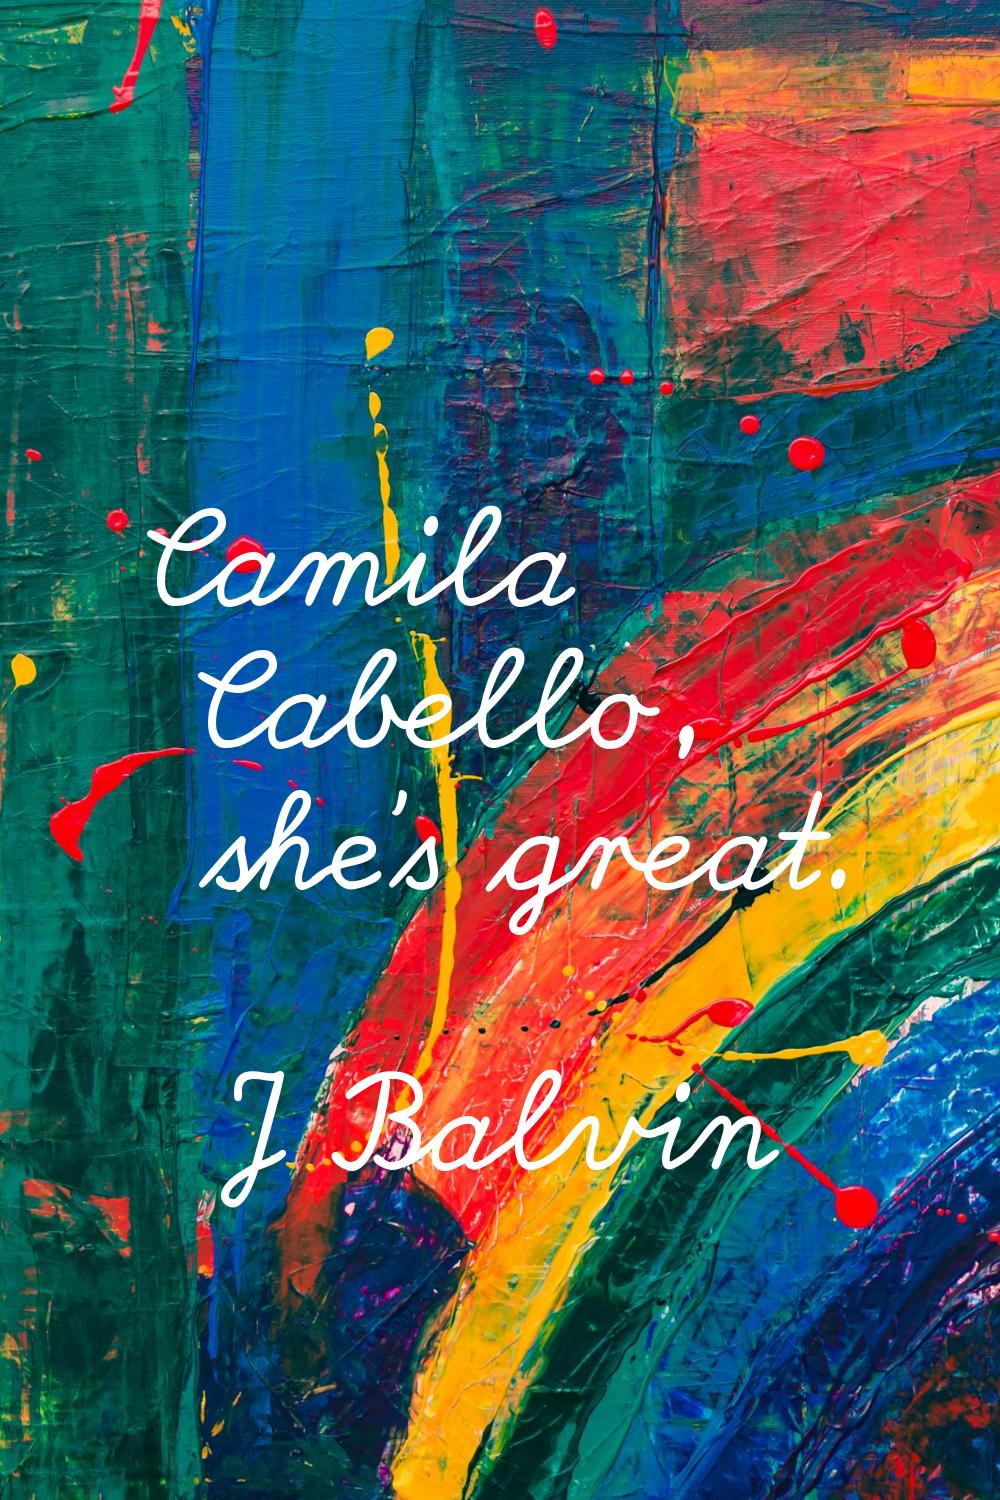 Camila Cabello, she's great.